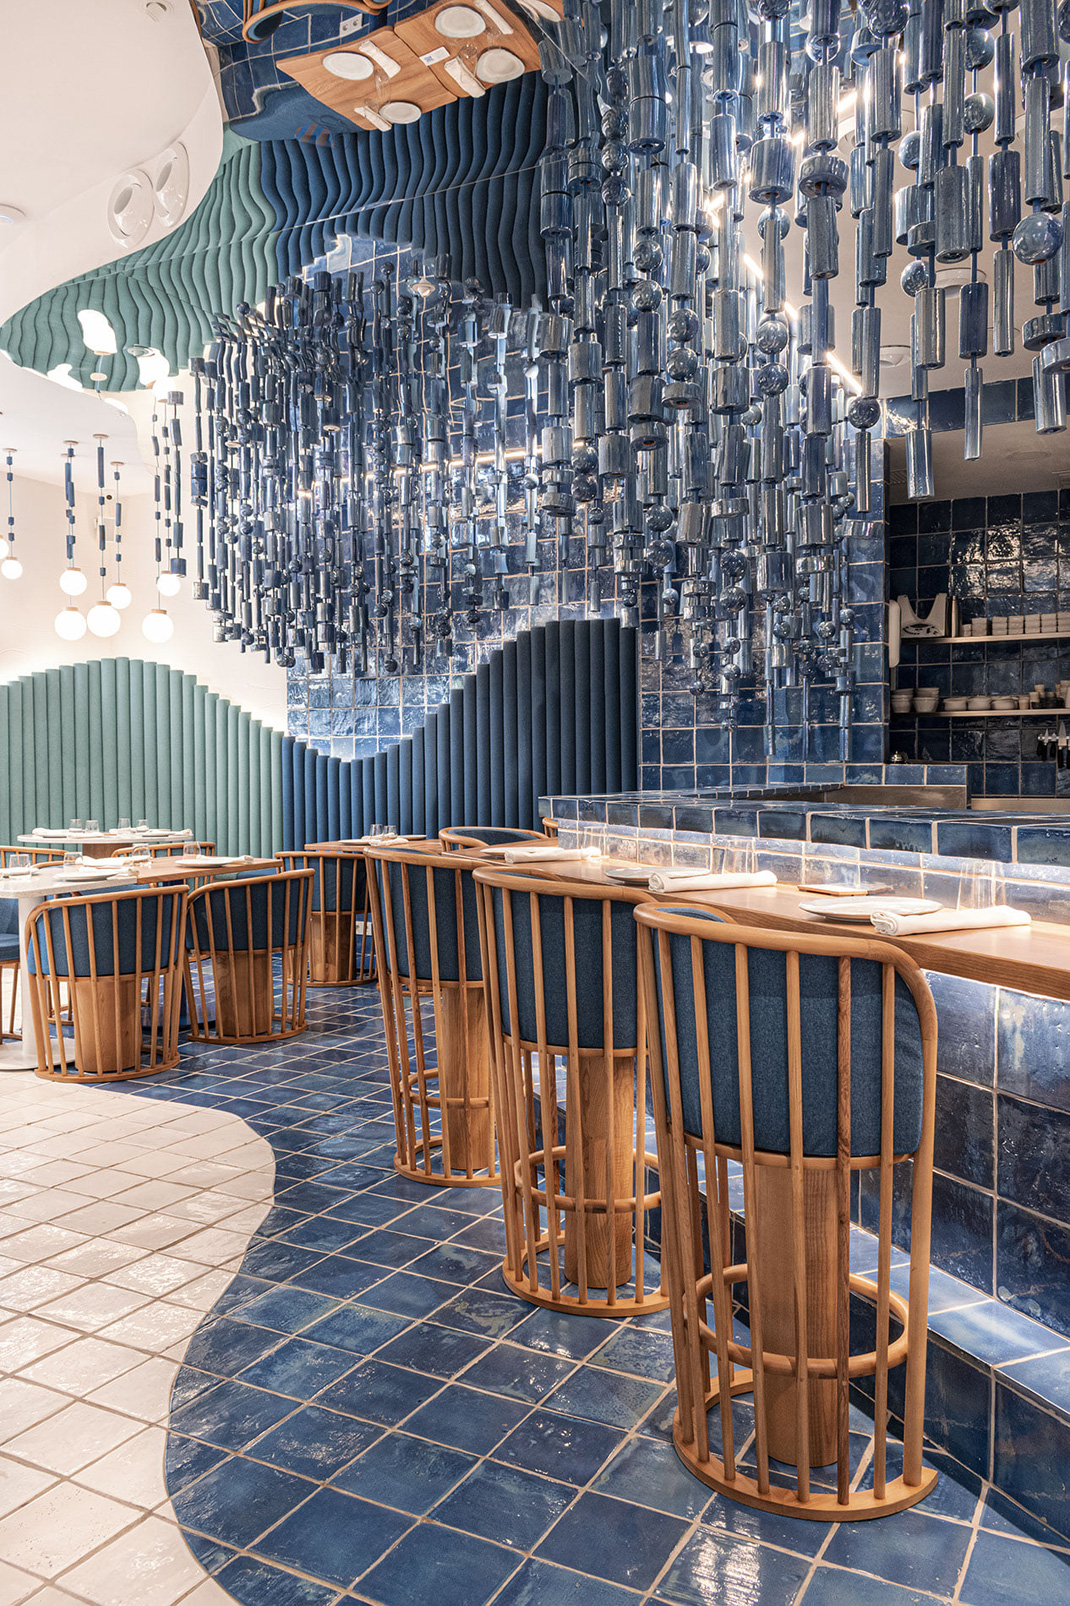 La Sastrería酒吧餐厅 西班牙 酒吧 马赛克 瓷砖 装置 logo设计 vi设计 空间设计